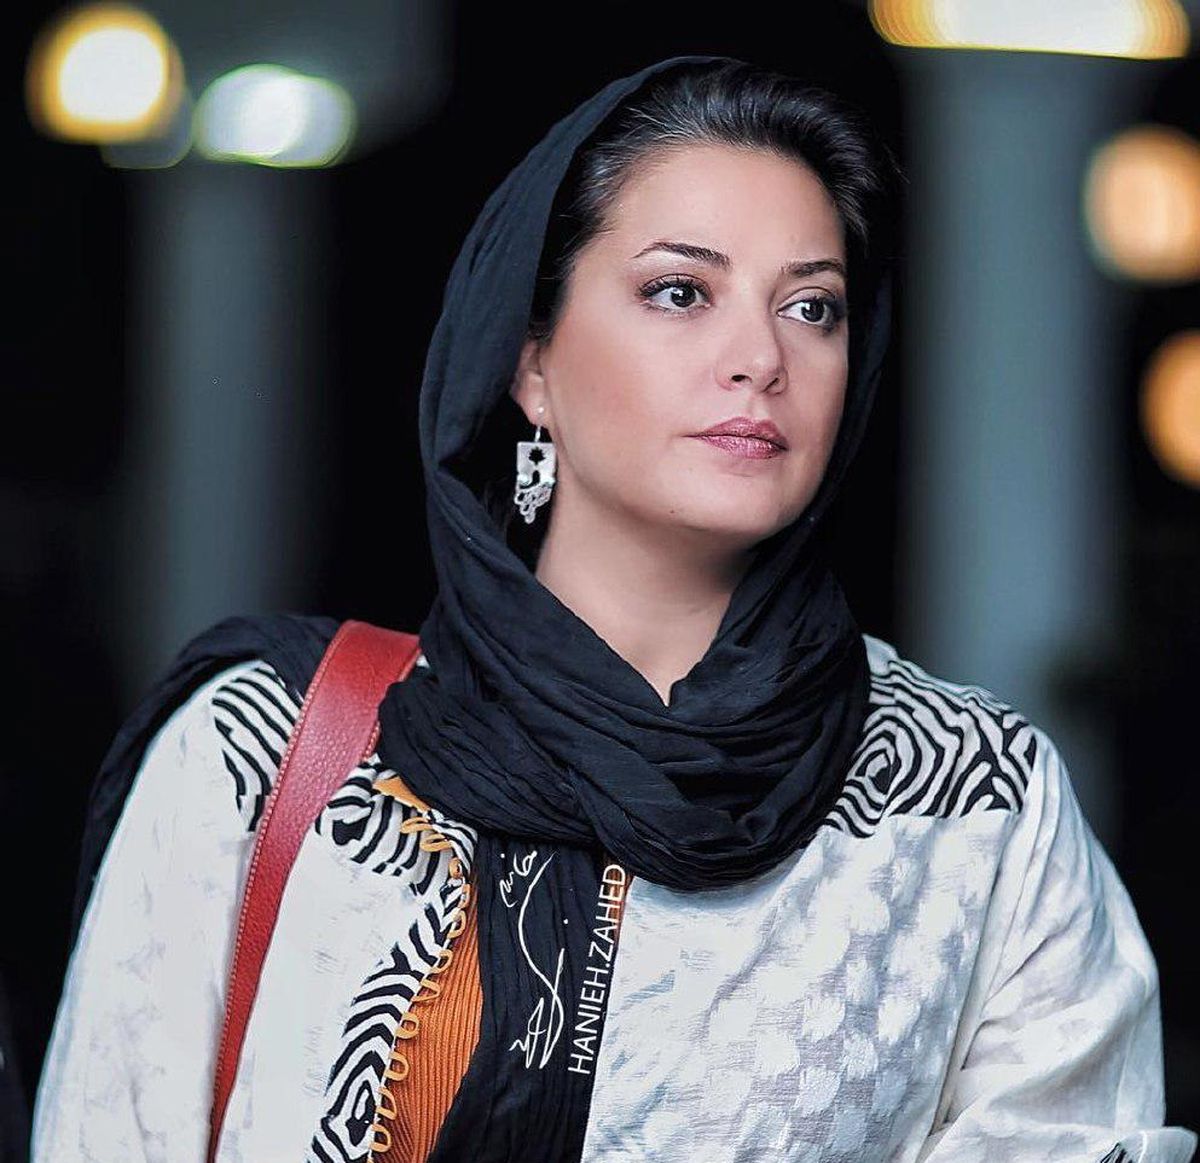 تنها بازیگر زن سینمای ایران که بدون آرایش هم جذاب است!/ عکس